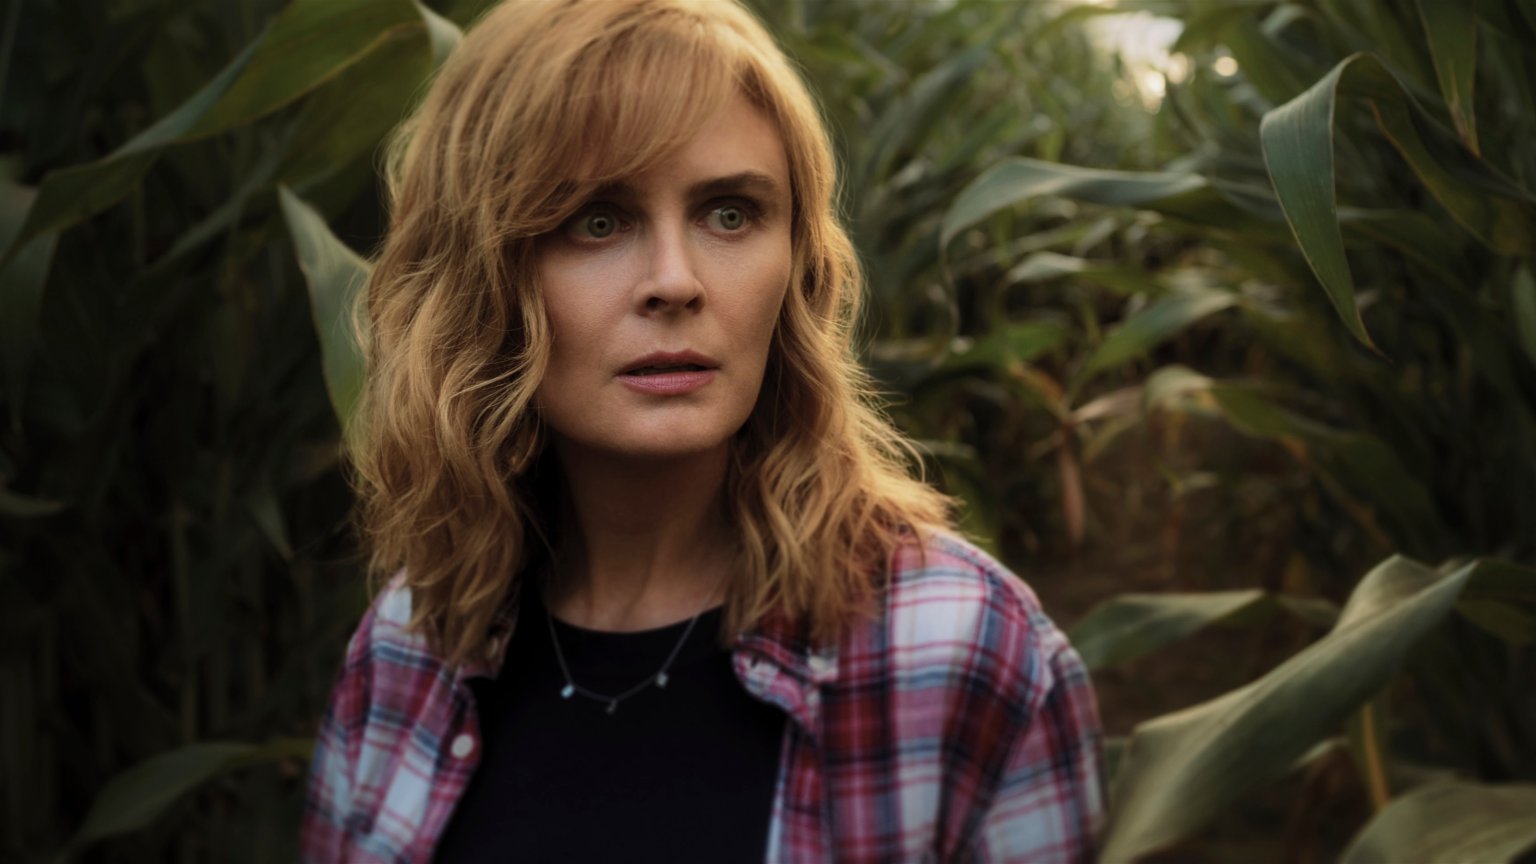 Nieuwe horrorserie in aantocht op Netflix met 'Bones'-ster Emily Deschanel